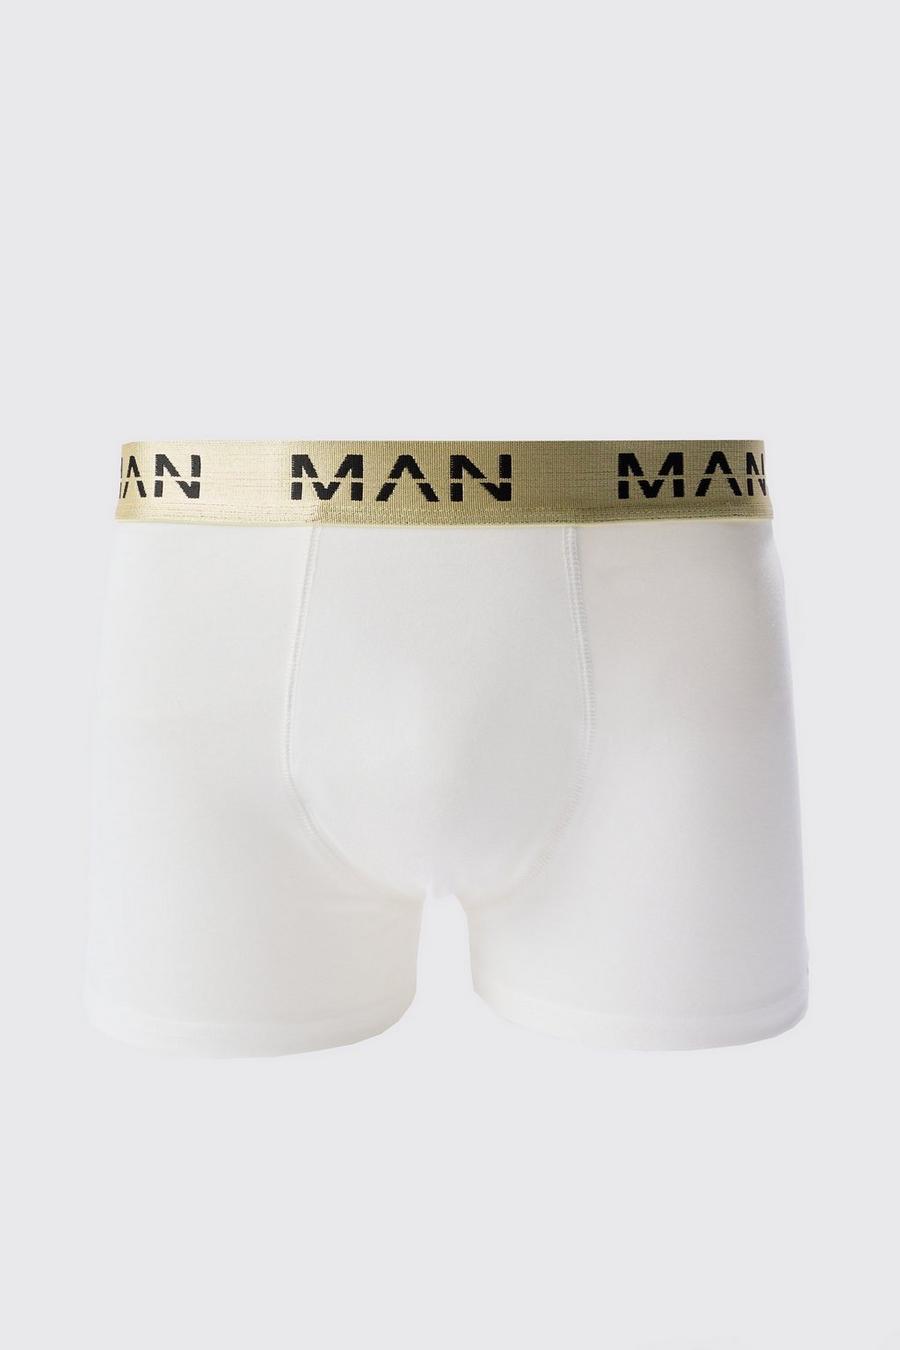 Bóxers blancos con cintura romana y letras MAN romanas doradas, White